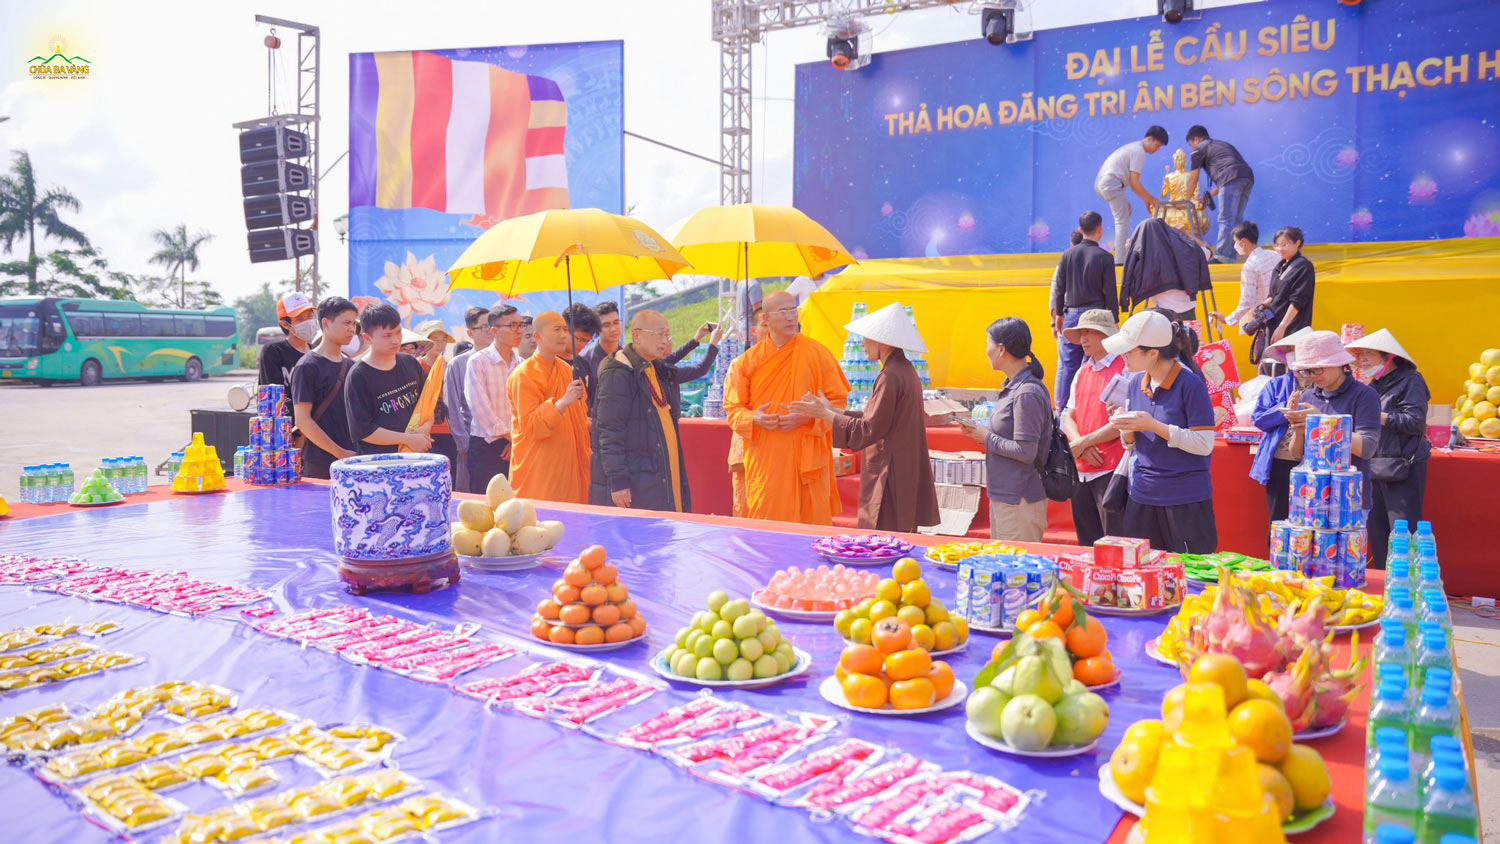 Hòa Thượng Thích Tánh Nhiếp và Sư Phụ Thích Trúc Thái Minh đã lắng nghe các Phật tử báo cáo công tác chuẩn bị cho Đại lễ cầu siêu - Thả hoa đăng tri ân bên sông Thạch Hãn